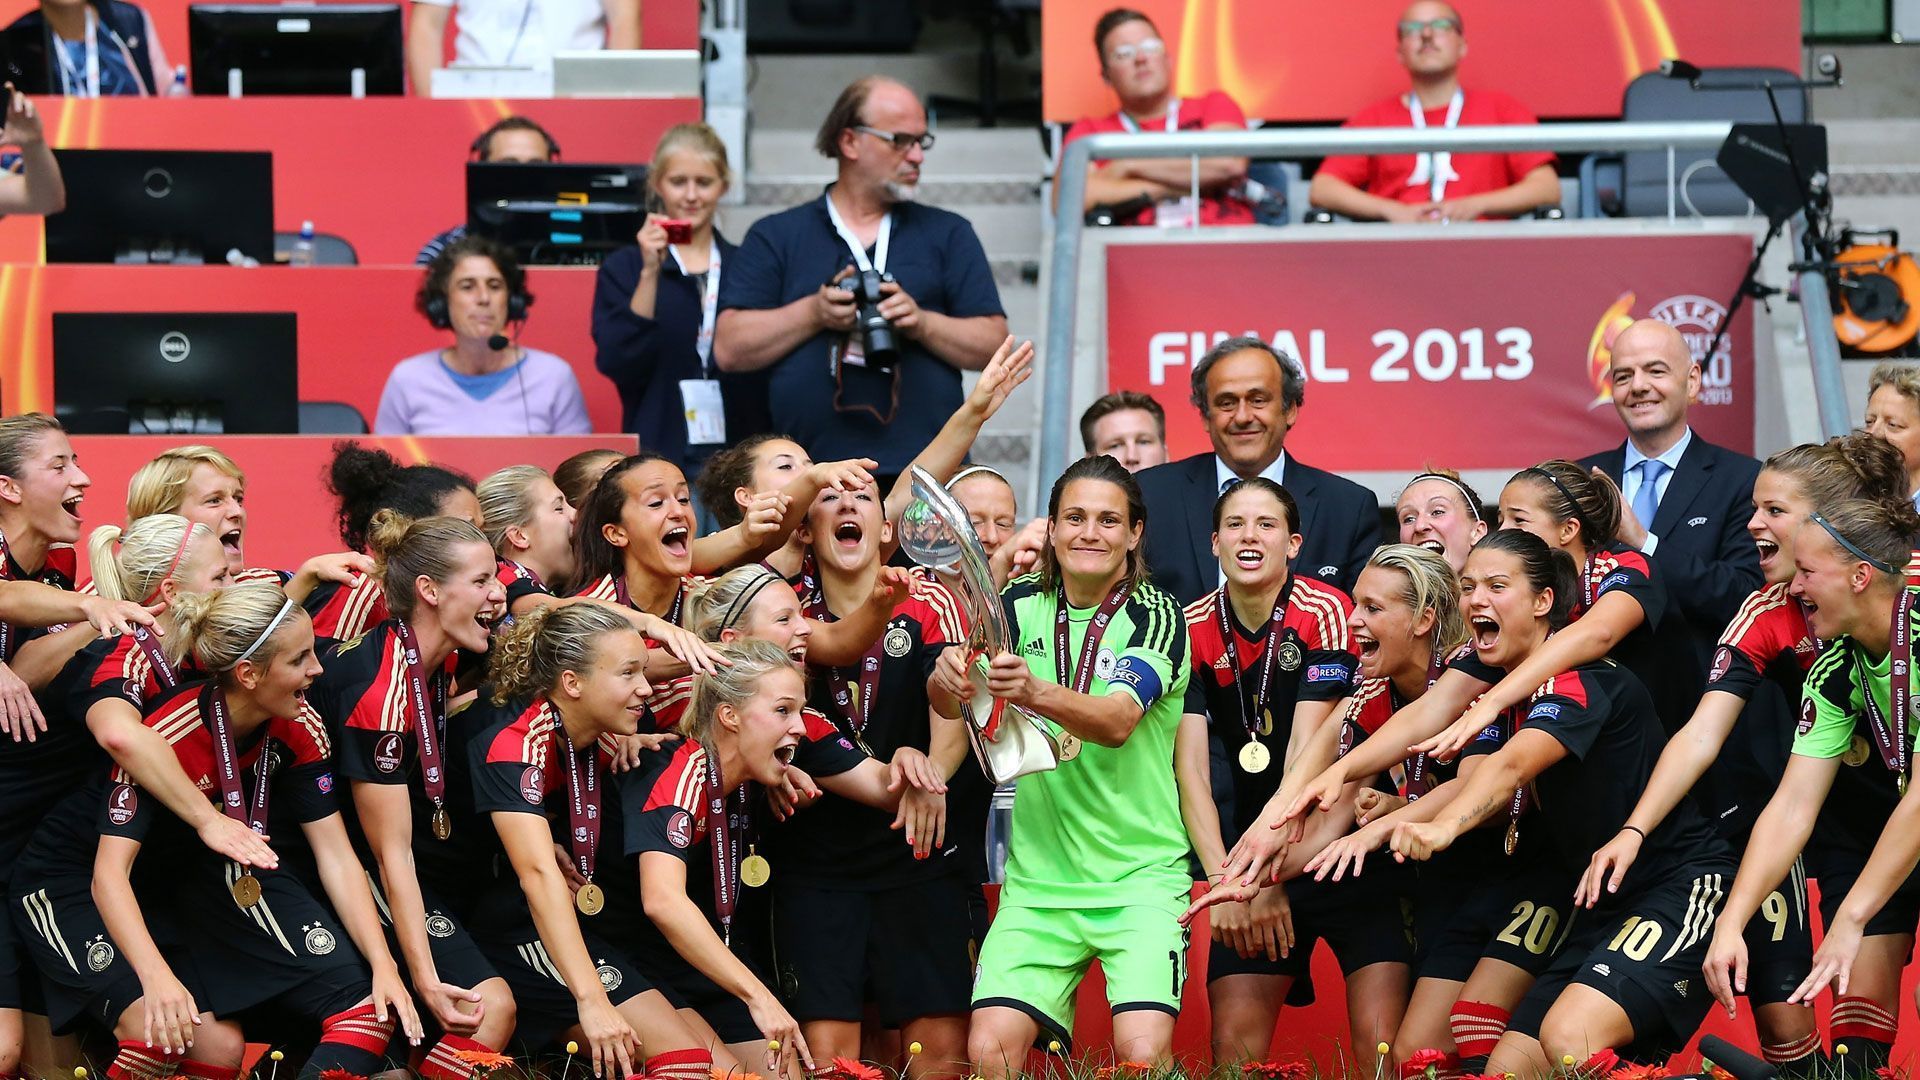 
                <strong>Dieses Frauen-Team gewann zuletzt die EM</strong><br>
                Vor neun Jahren gewinnen die DFB-Frauen letztmals die EM. Es ist der sechste Titel in Serie für den DFB, der achte insgesamt. ran blickt zurück auf die Nationalspielerinnen, die letztmals triumphierten.
              